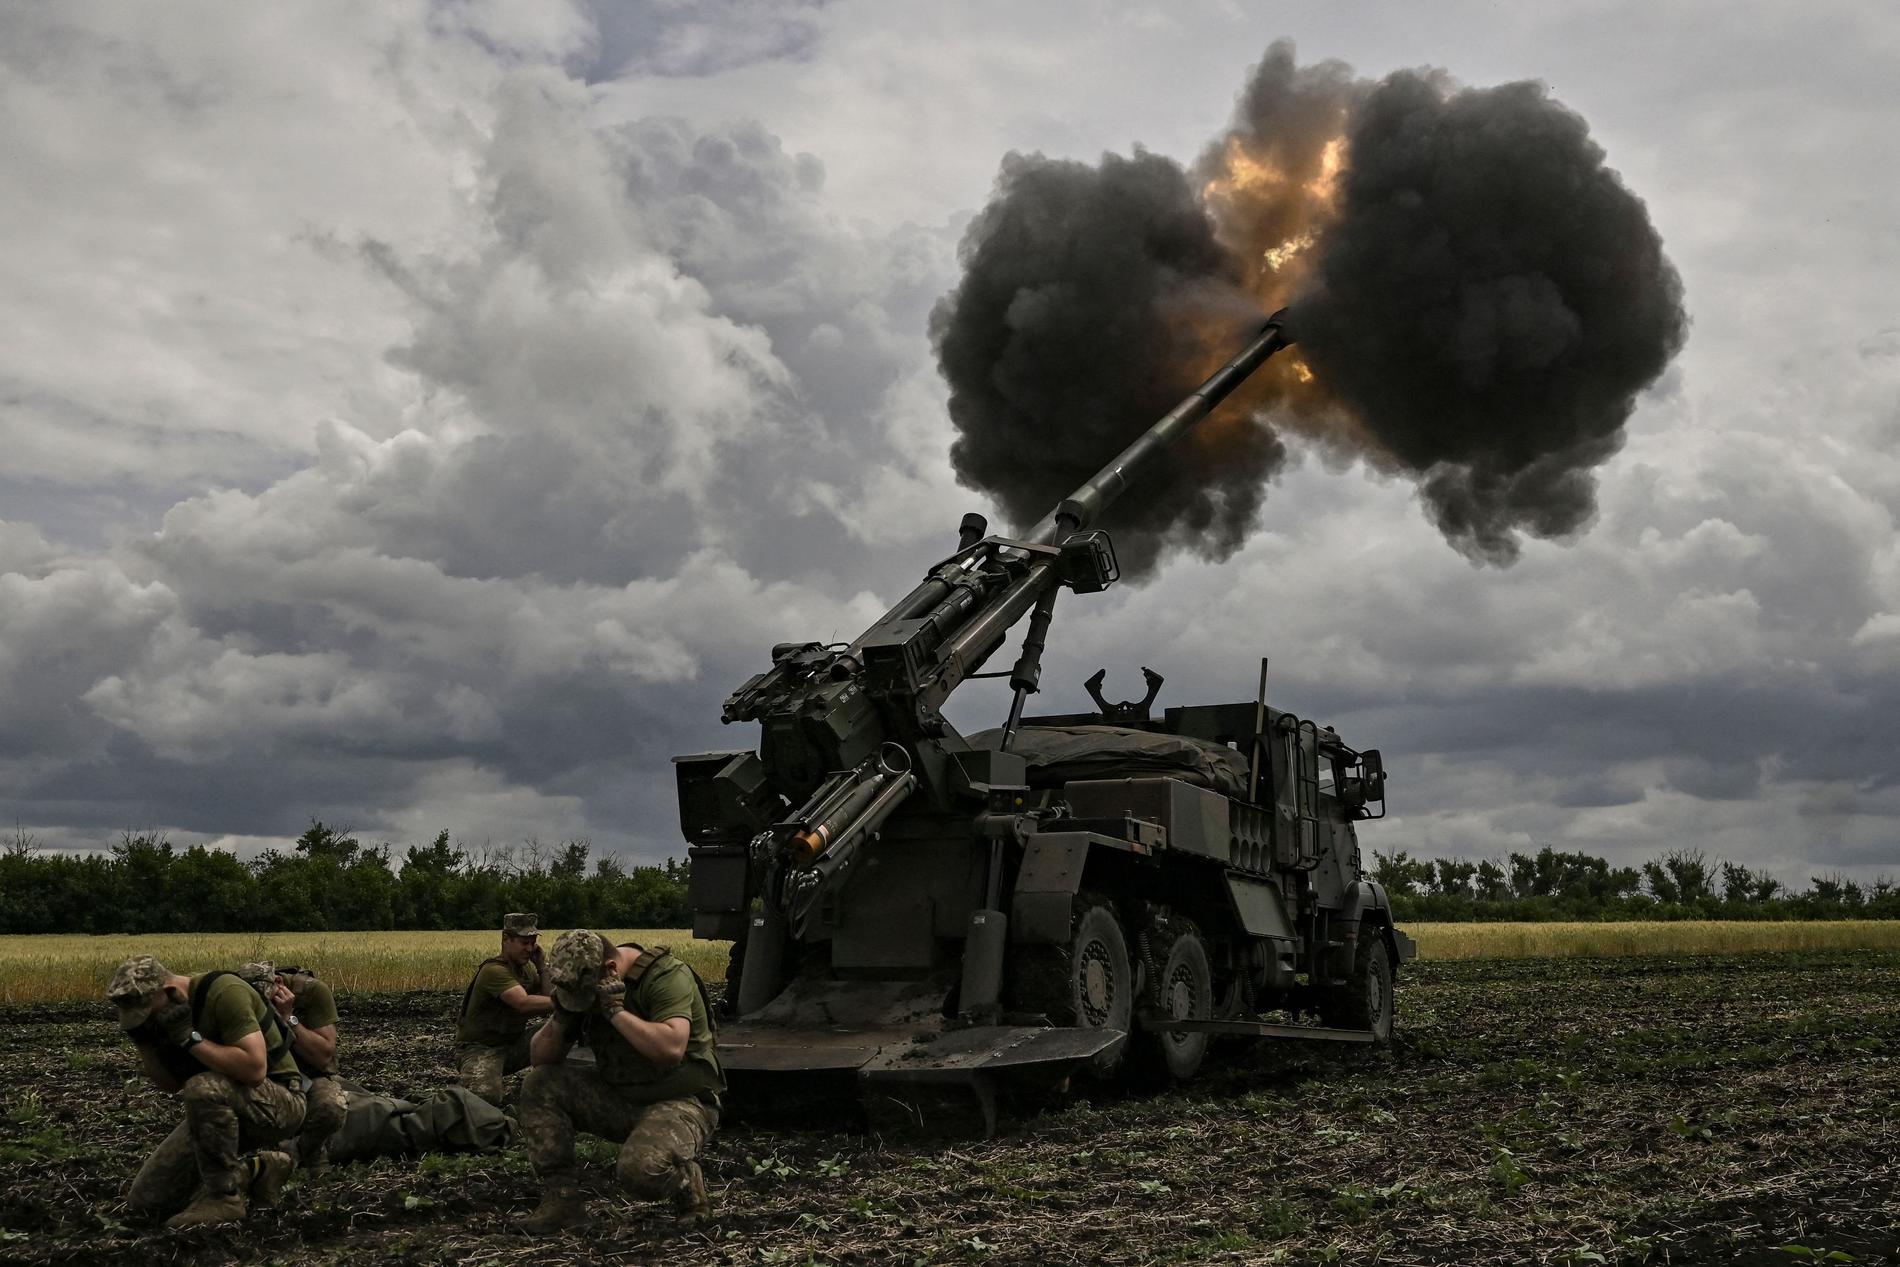 Il tempo stringe per gli ucraini – devono avere nuove armi – VG